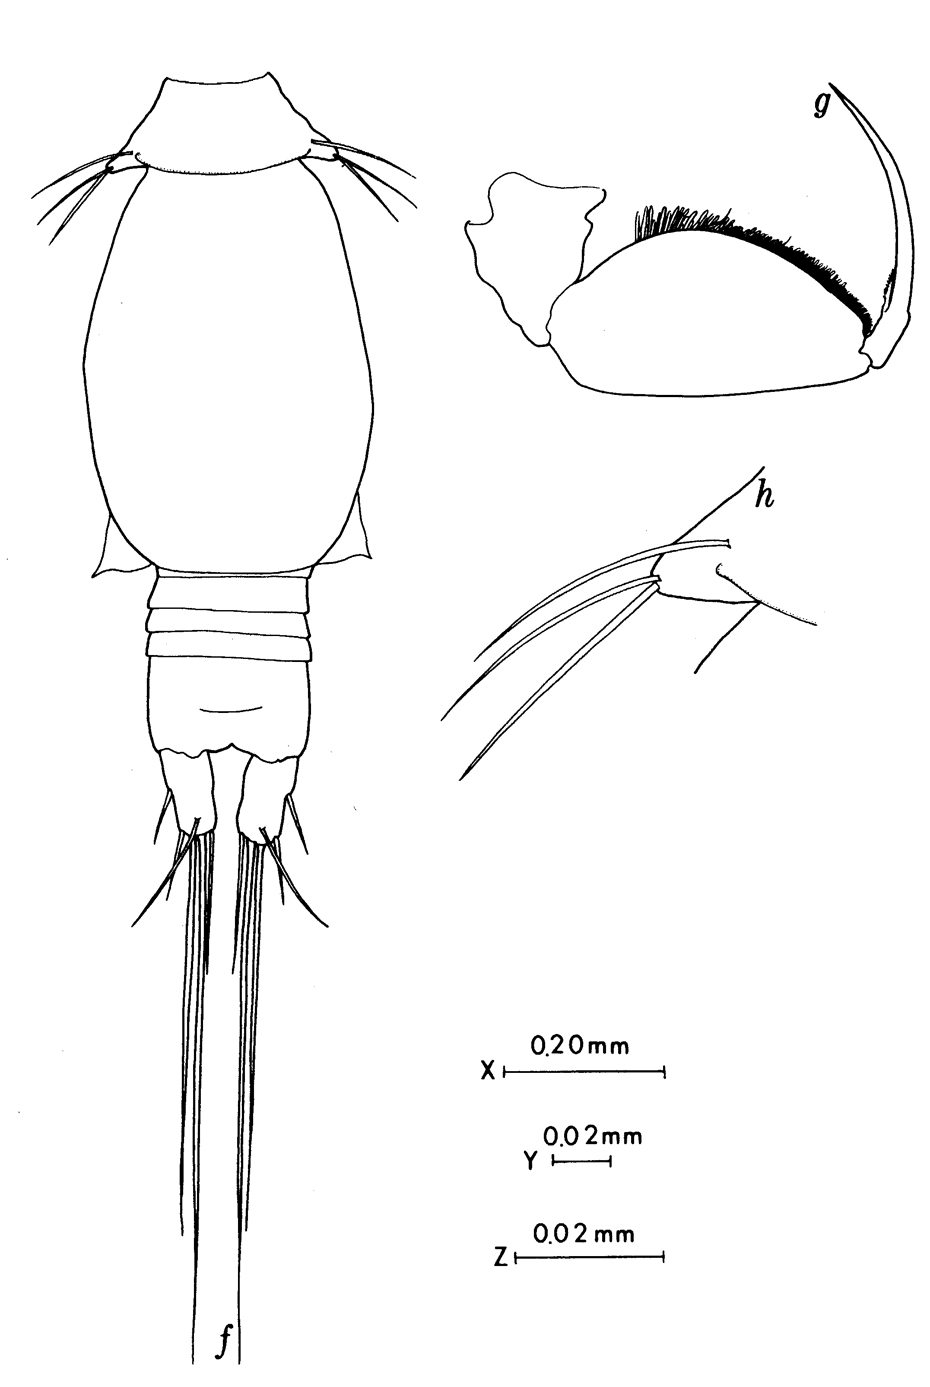 Espèce Oncaea brocha - Planche 3 de figures morphologiques